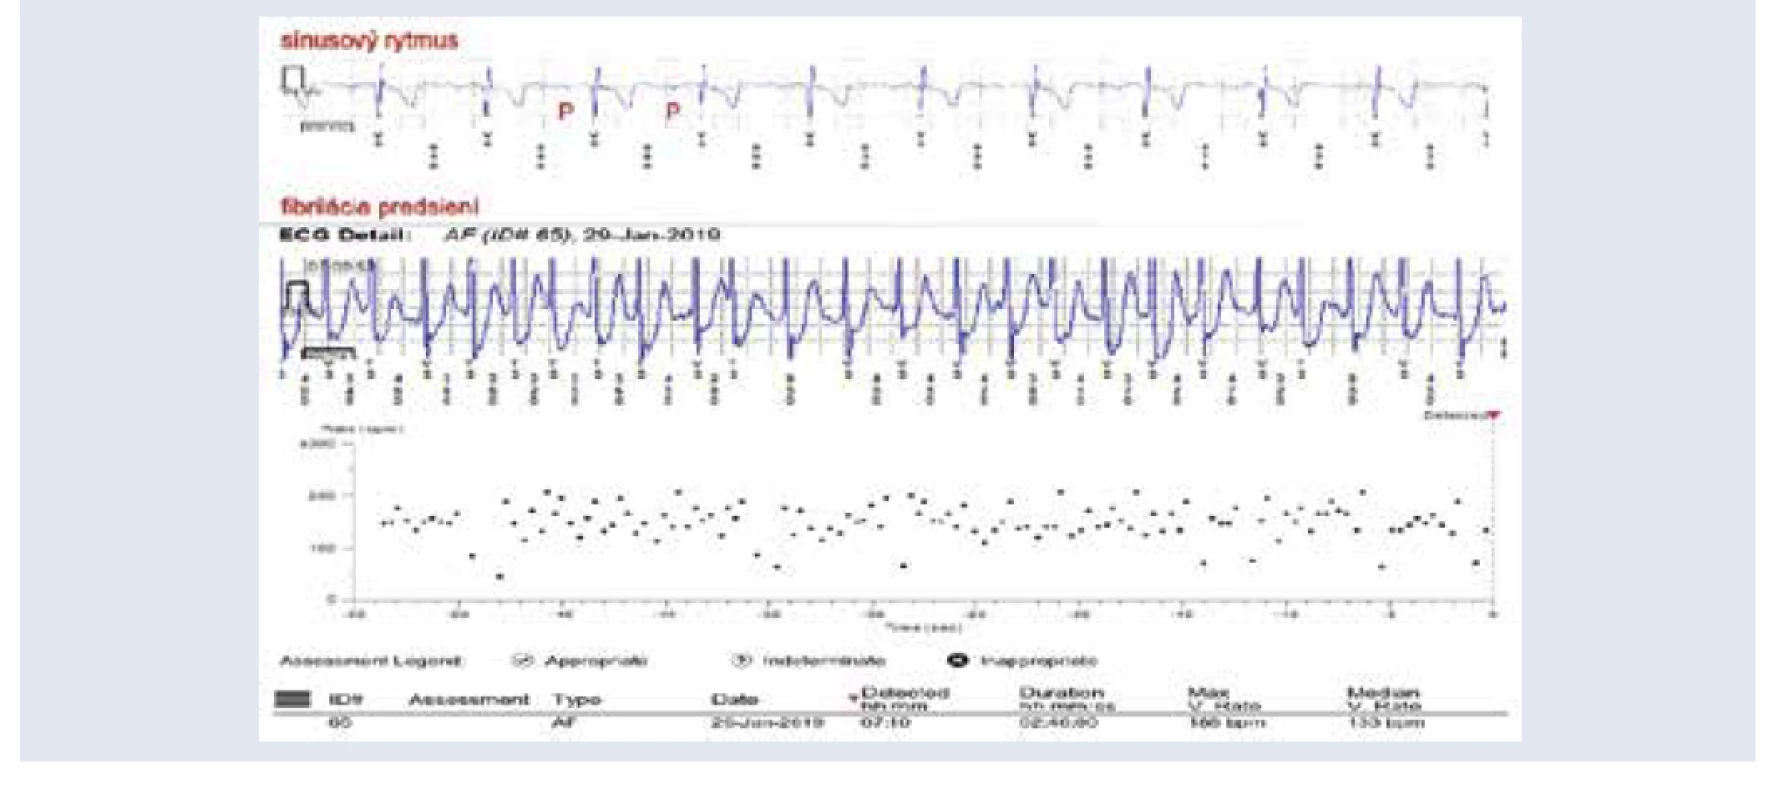 Záchyt paroxyzmu fibrilácie predsiení prostredníctvom implantovateľného slučkového záznamníka u
pacienta po prekonaní ischemickej CMP. Výpis z diaľkového monitoringu. V hornej časti obrázka EKG
so sínusovým rytmom, pod ním EKG so záchytom fibrilácie predsiení v trvaní 2 hodiny a 46 minút.
V dolnej časti obrázka plotový diagram vyjadrujúci nepravidelnú a rýchlu komorovú aktivitu pri
fibrilácii predsiení. <br>
Z archívu autorky